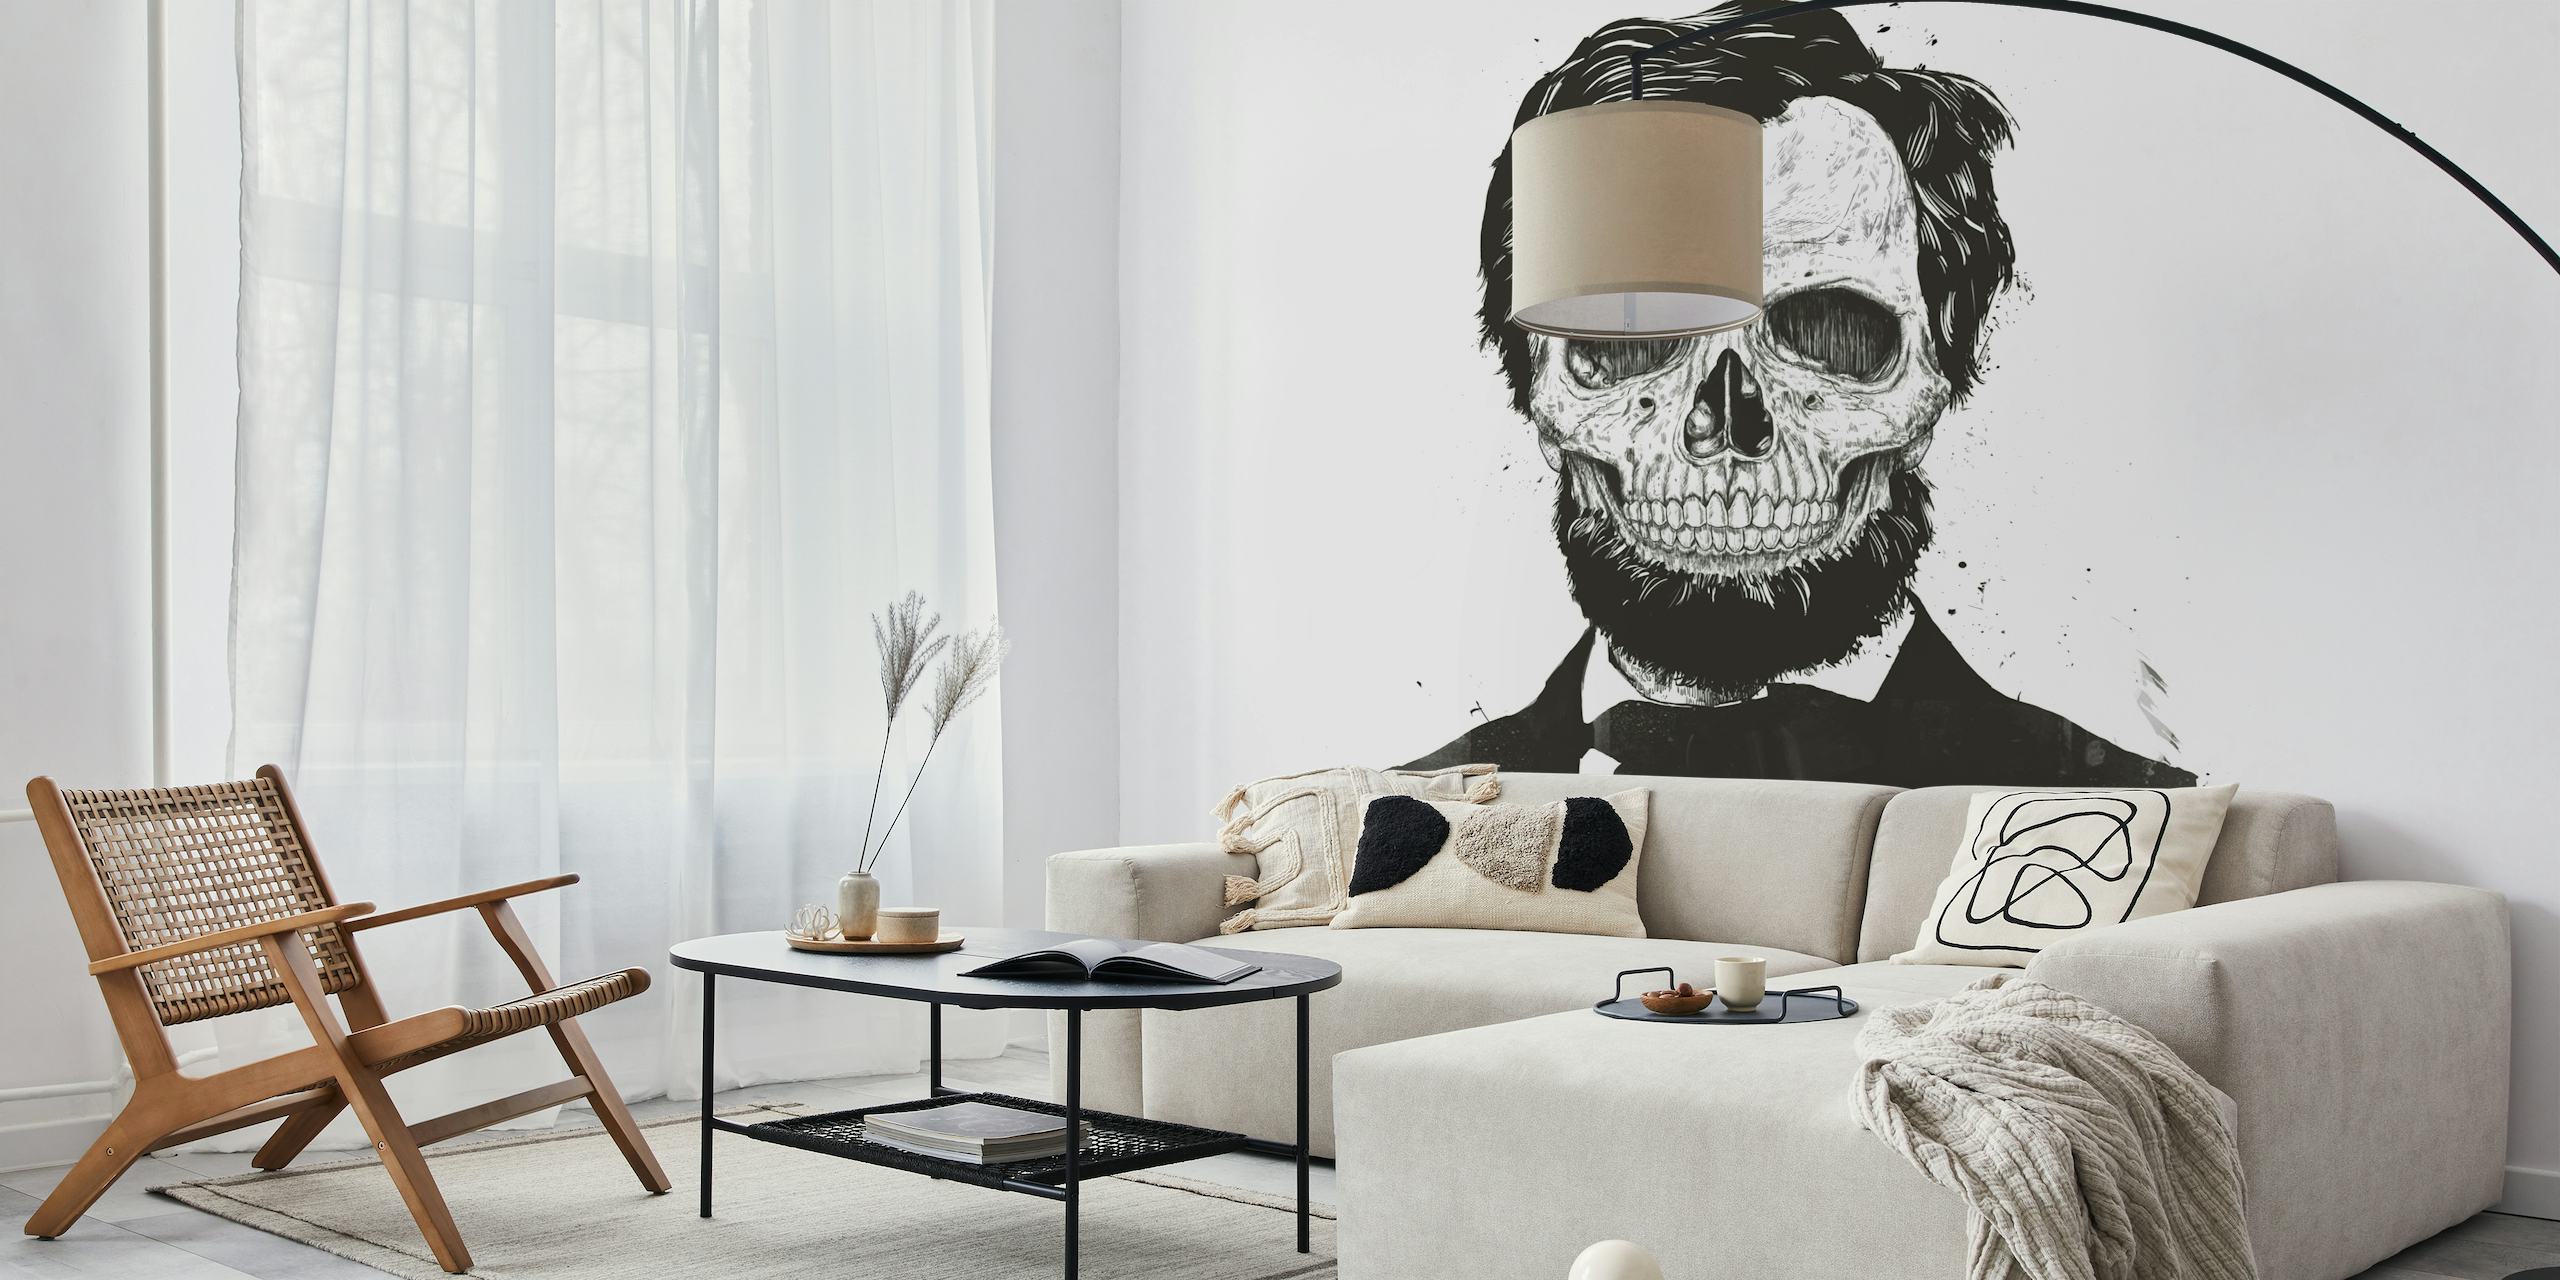 Fototapeta Martwy Lincoln przedstawiająca czaszkę w garniturze, połączenie sztuki gotyckiej i historycznej.